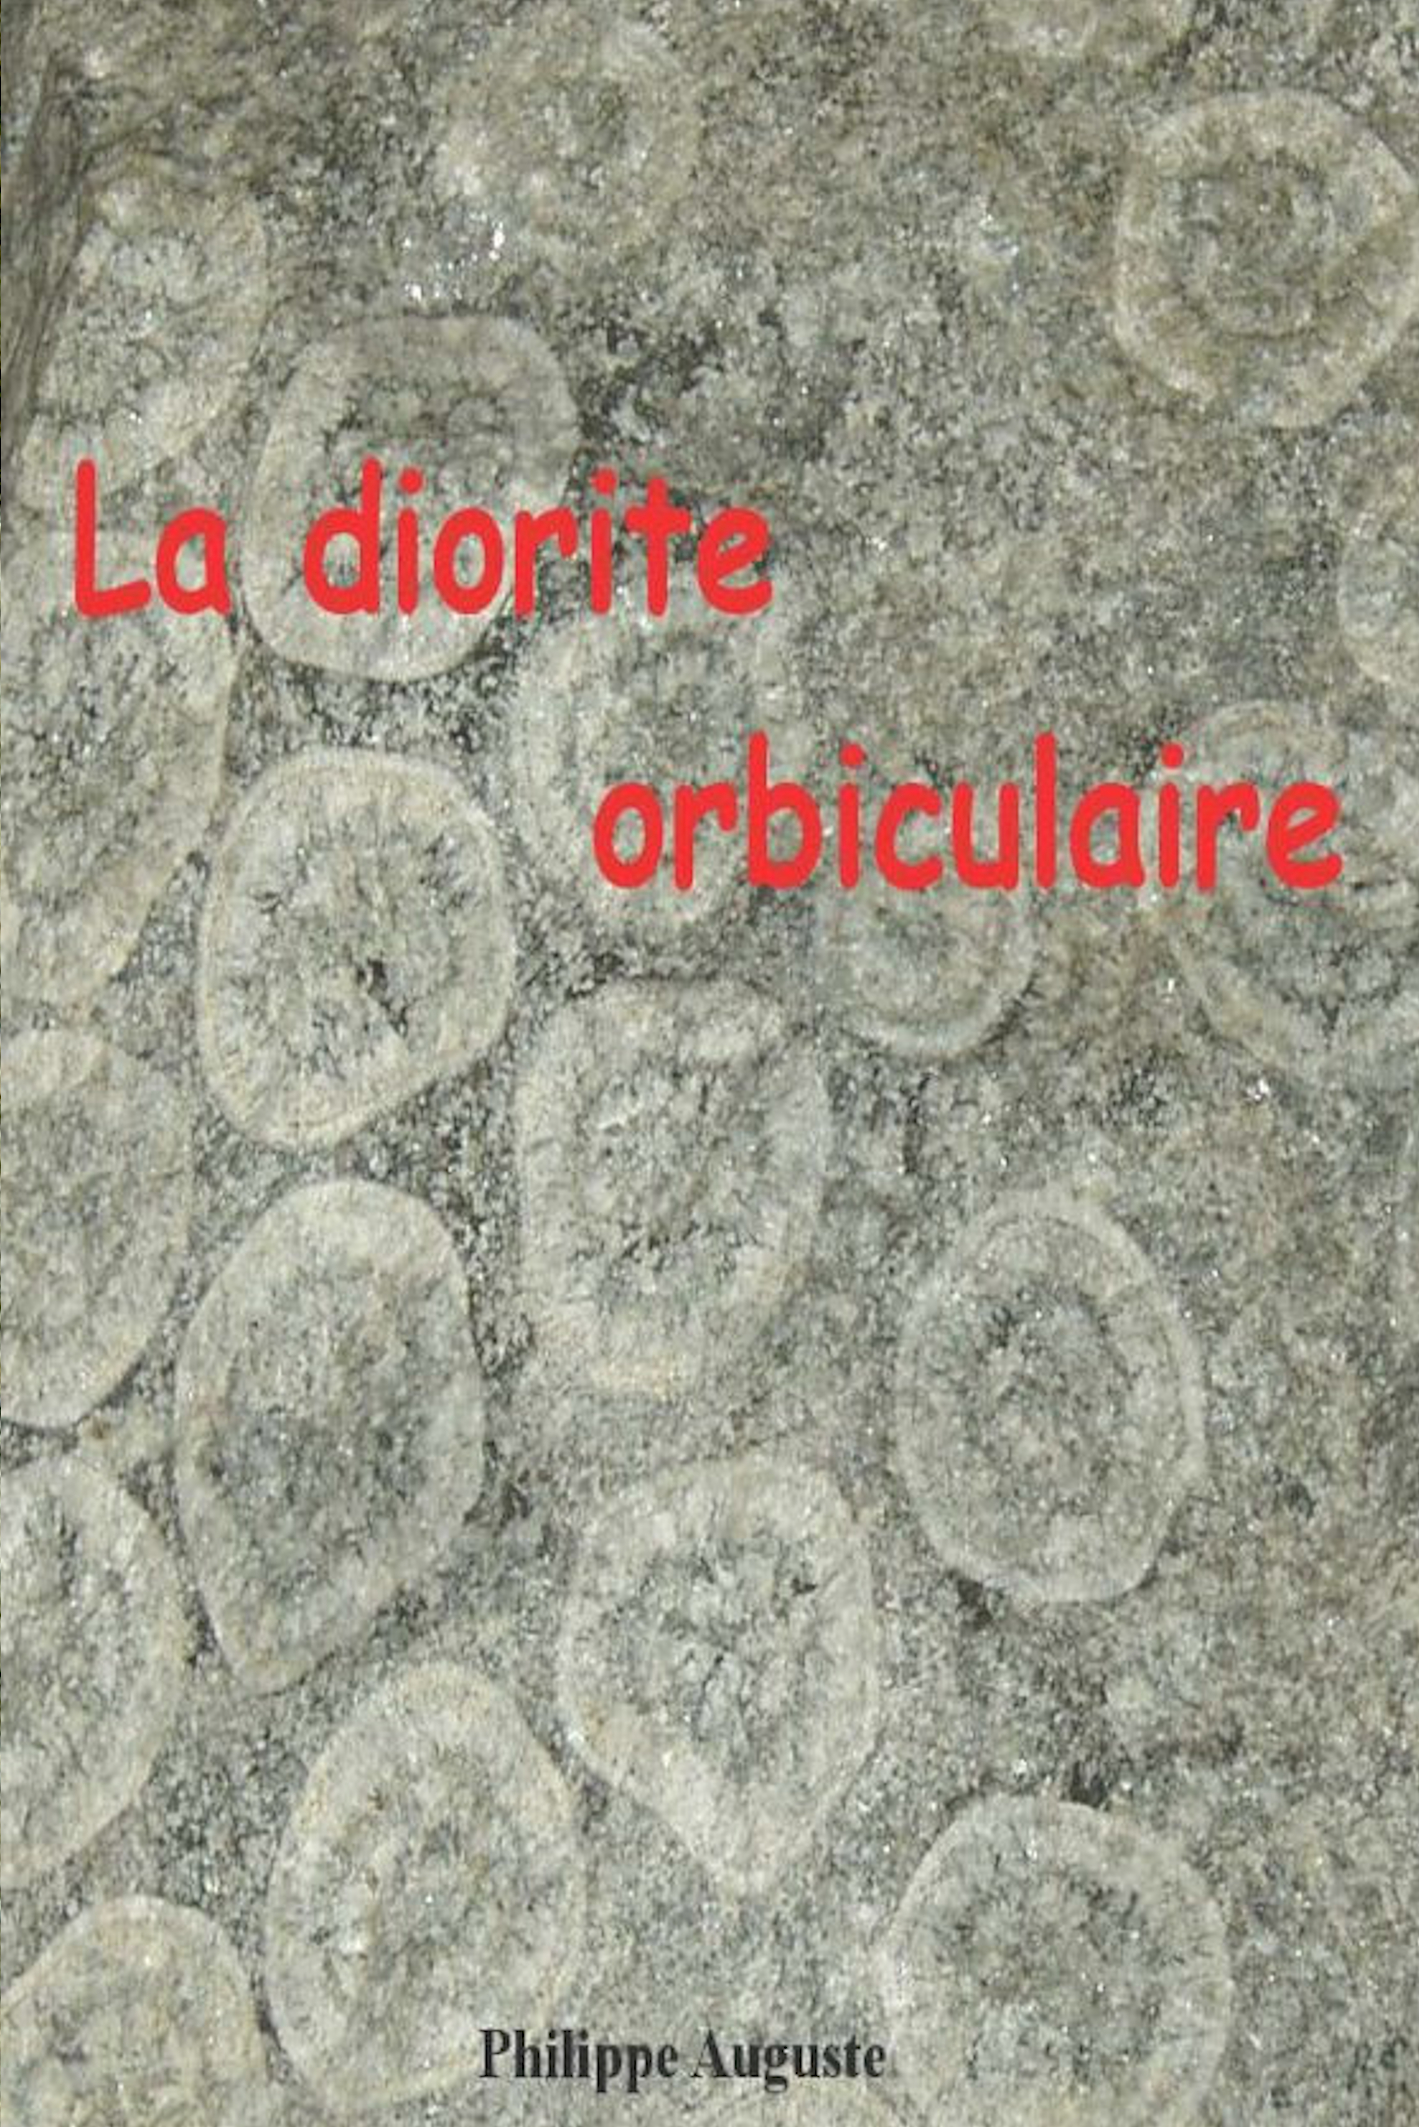 La diorite orbiculaire